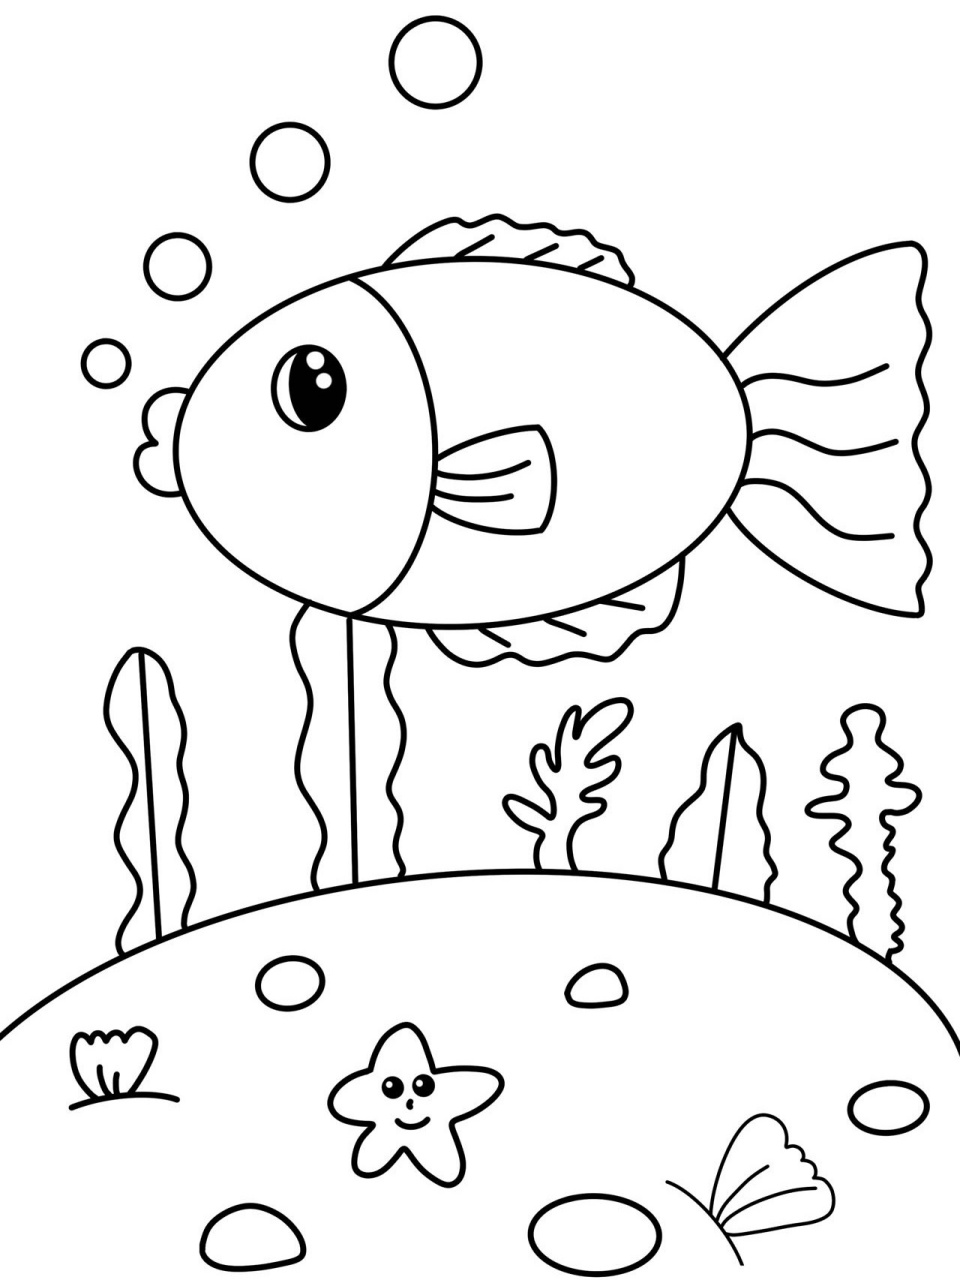 可爱的小鱼 简笔画 创意画 儿童画 带线稿 